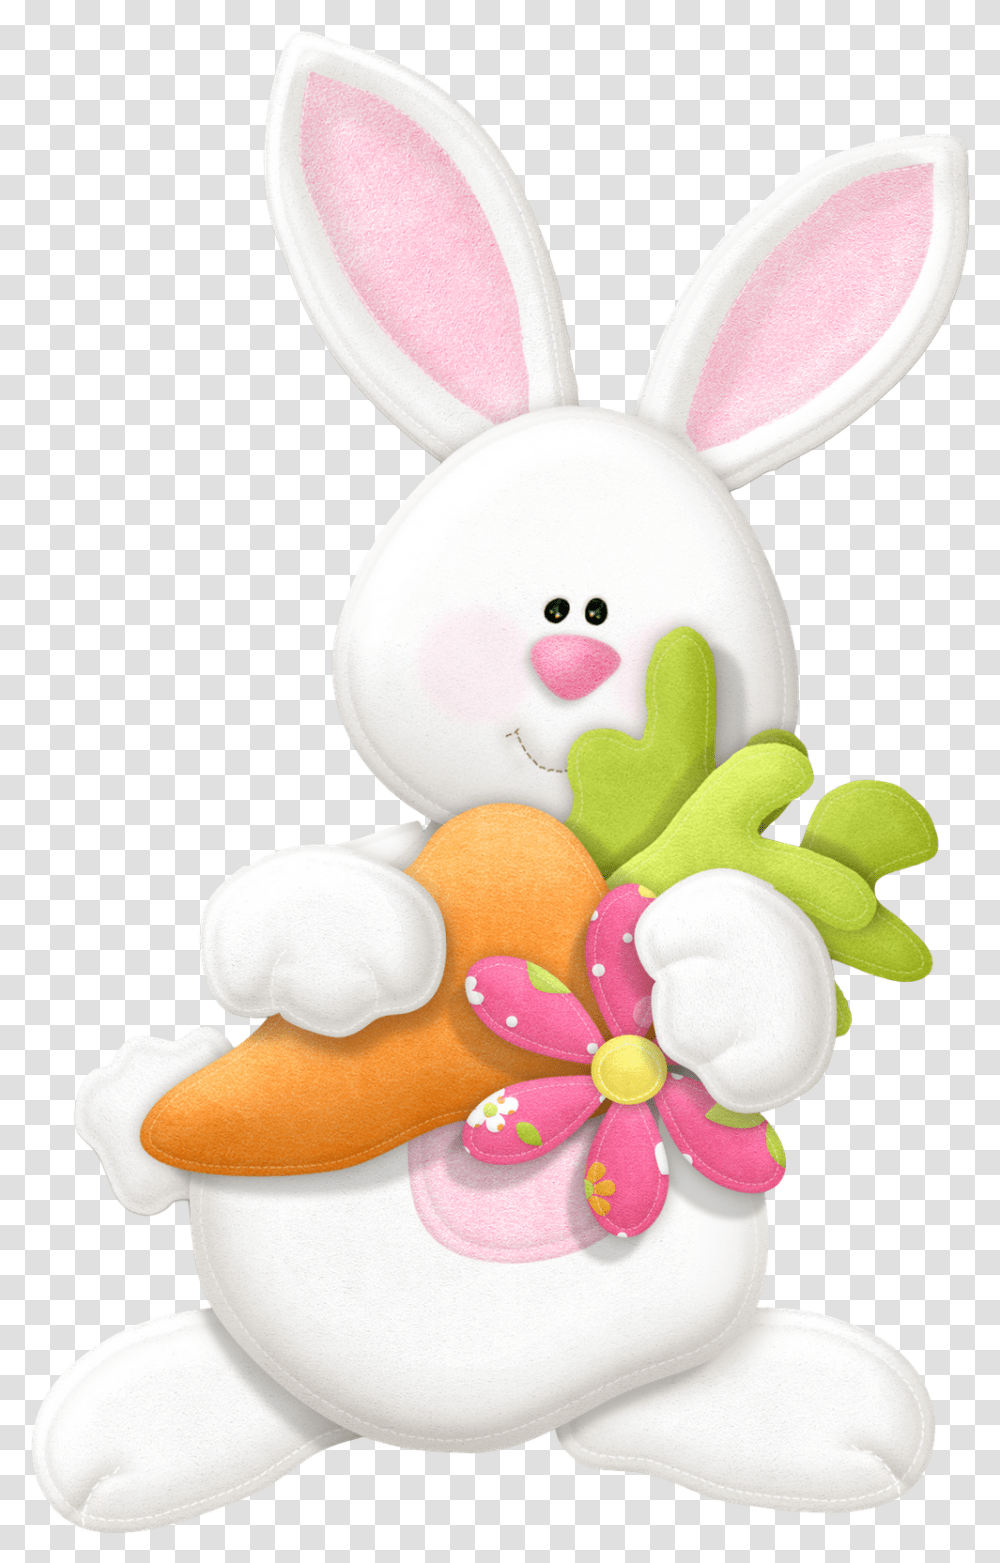 Coelhinho Da Pascoa Cute Pesquisa Google Easter Coelhinho Da Pascoa, Sweets, Food, Confectionery, Plush Transparent Png